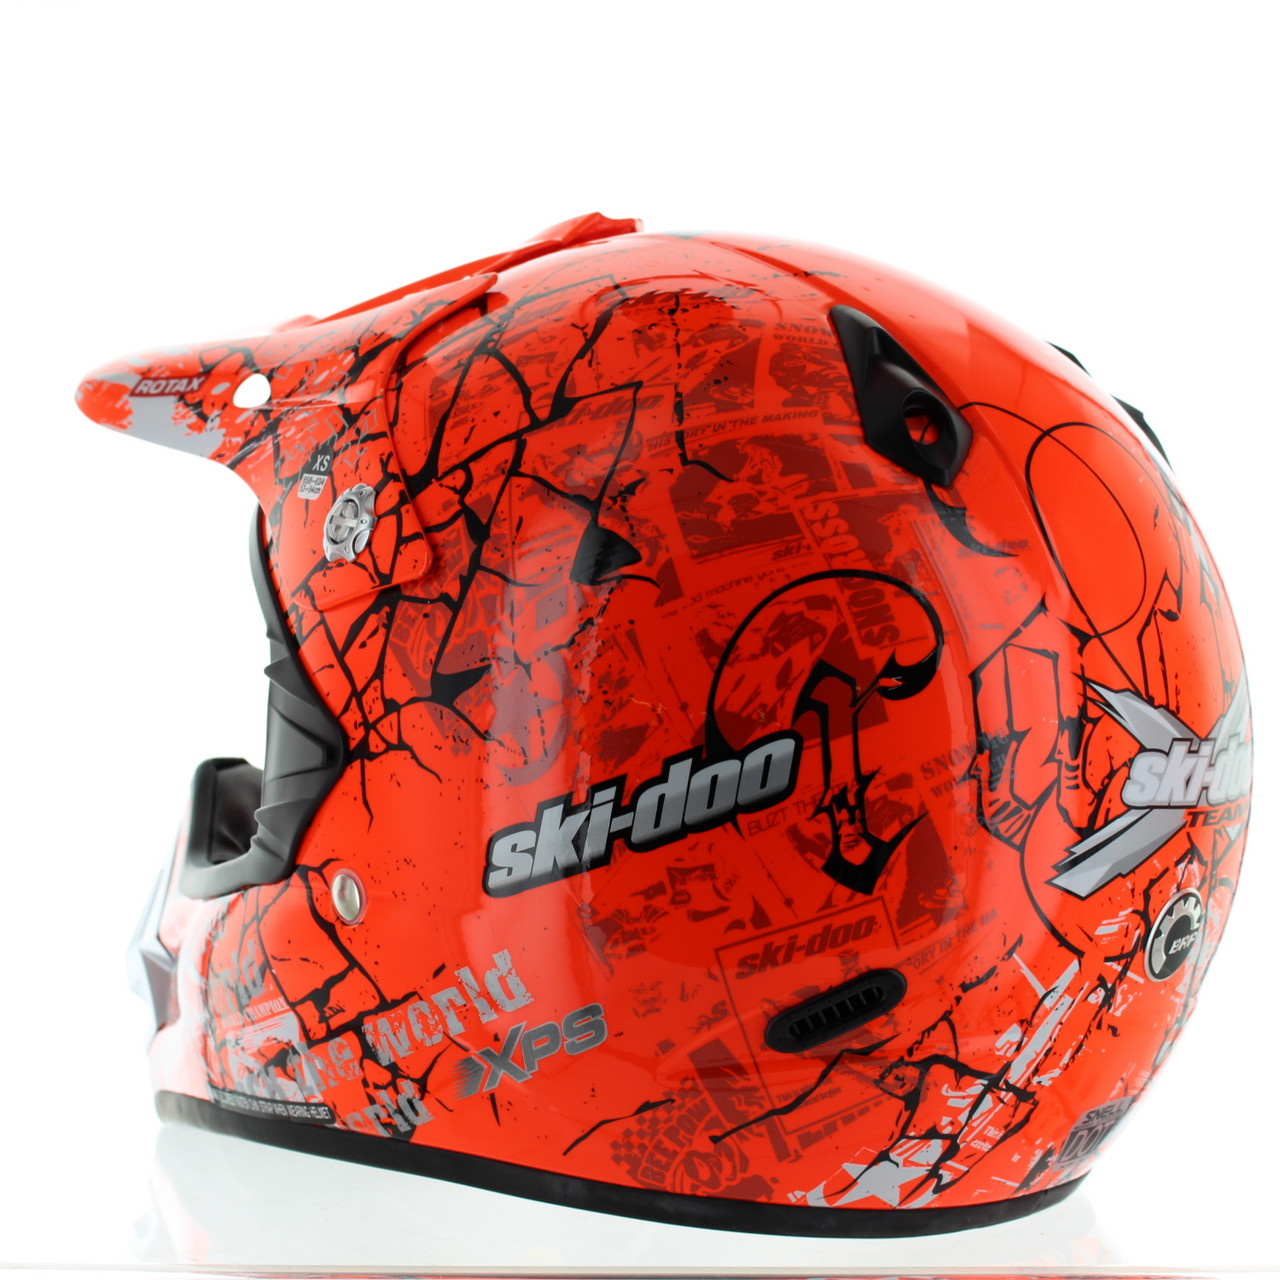 BRP New OEM Ski-Doo Snowcross Rebellious Orange Graphic Helmet X-S, 4473610212